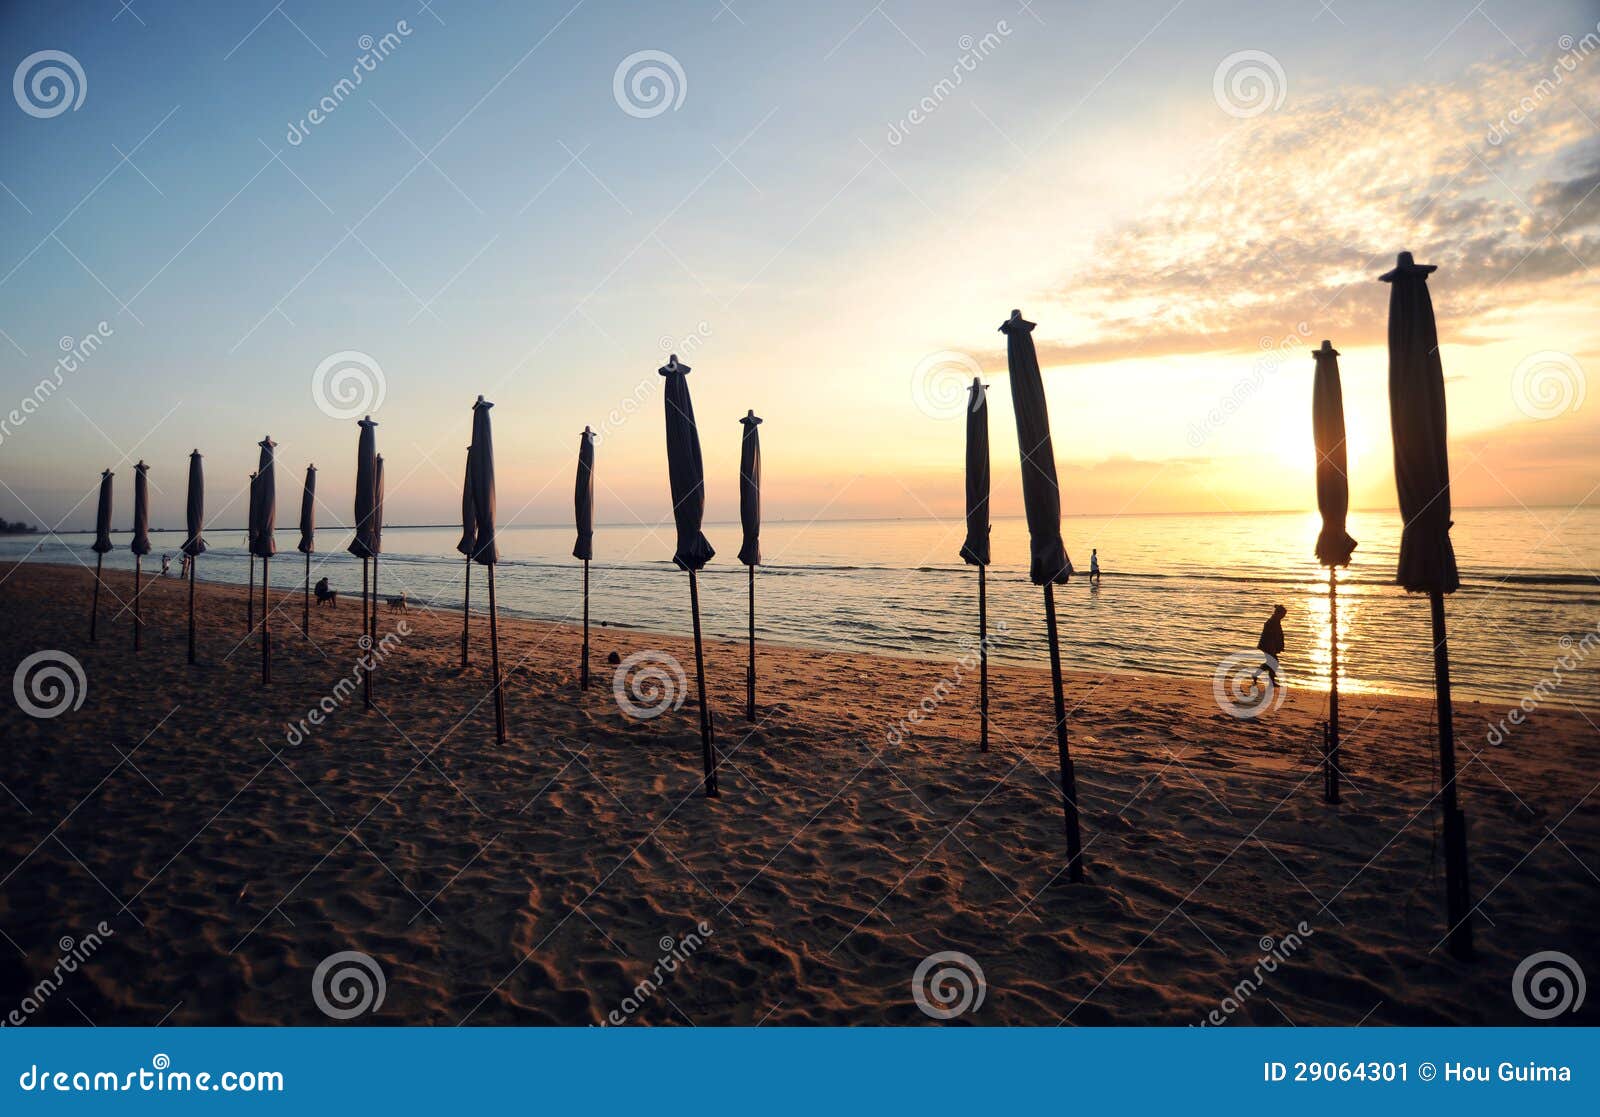 Beautiful Morning Sunrise With Beach Parasol Stock Image  Image 